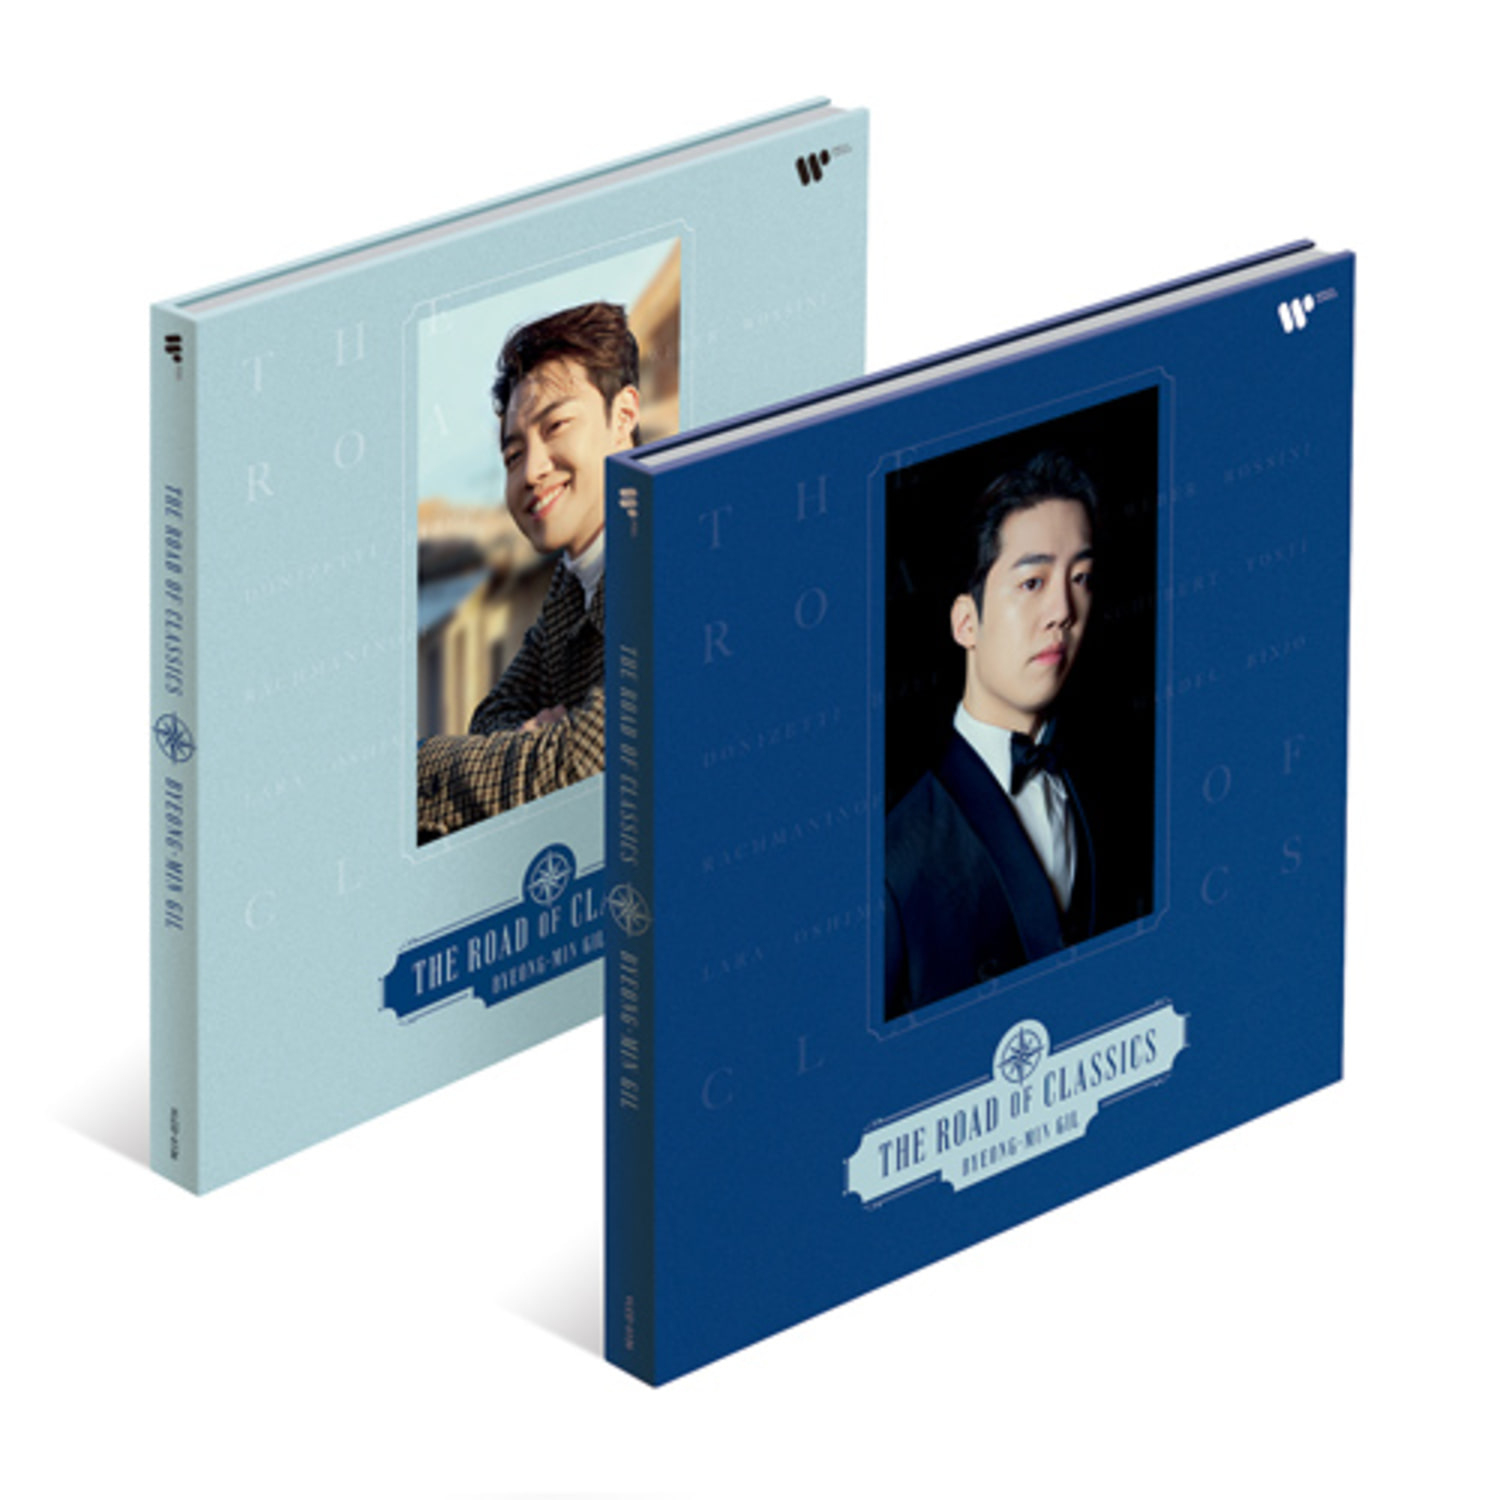 길병민 (Gil, Byeong-Min) - The Road of Classics (SET)